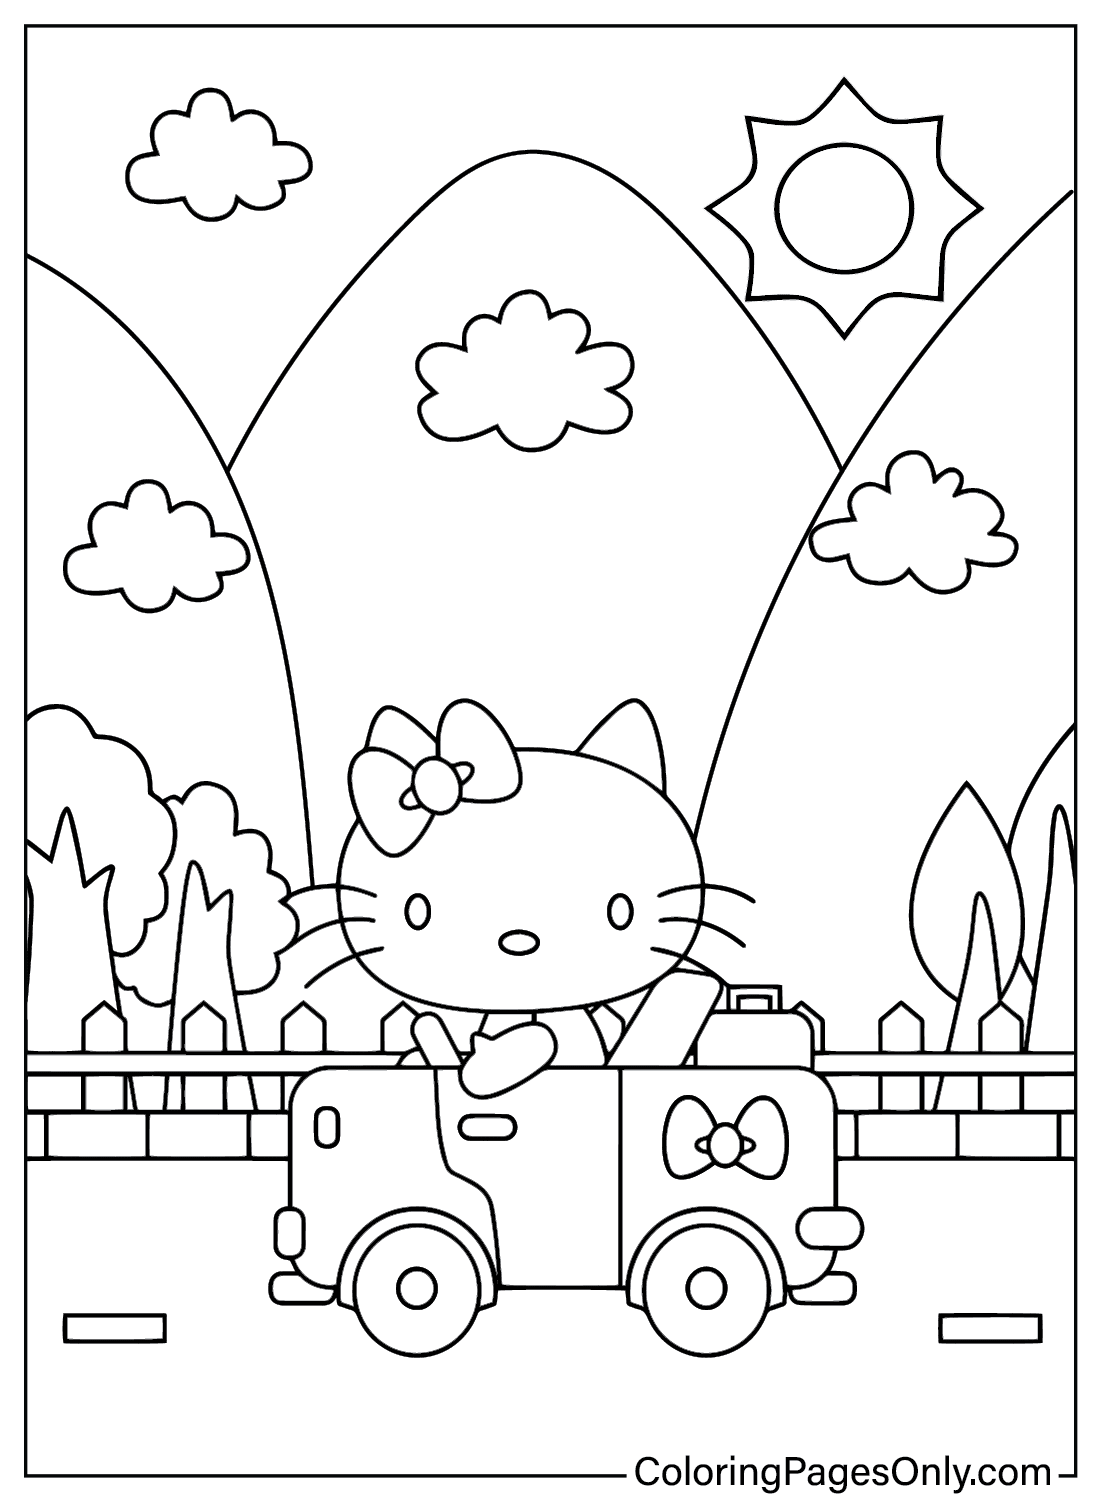 Ausmalbilder Hello Kitty zum ausdrucken